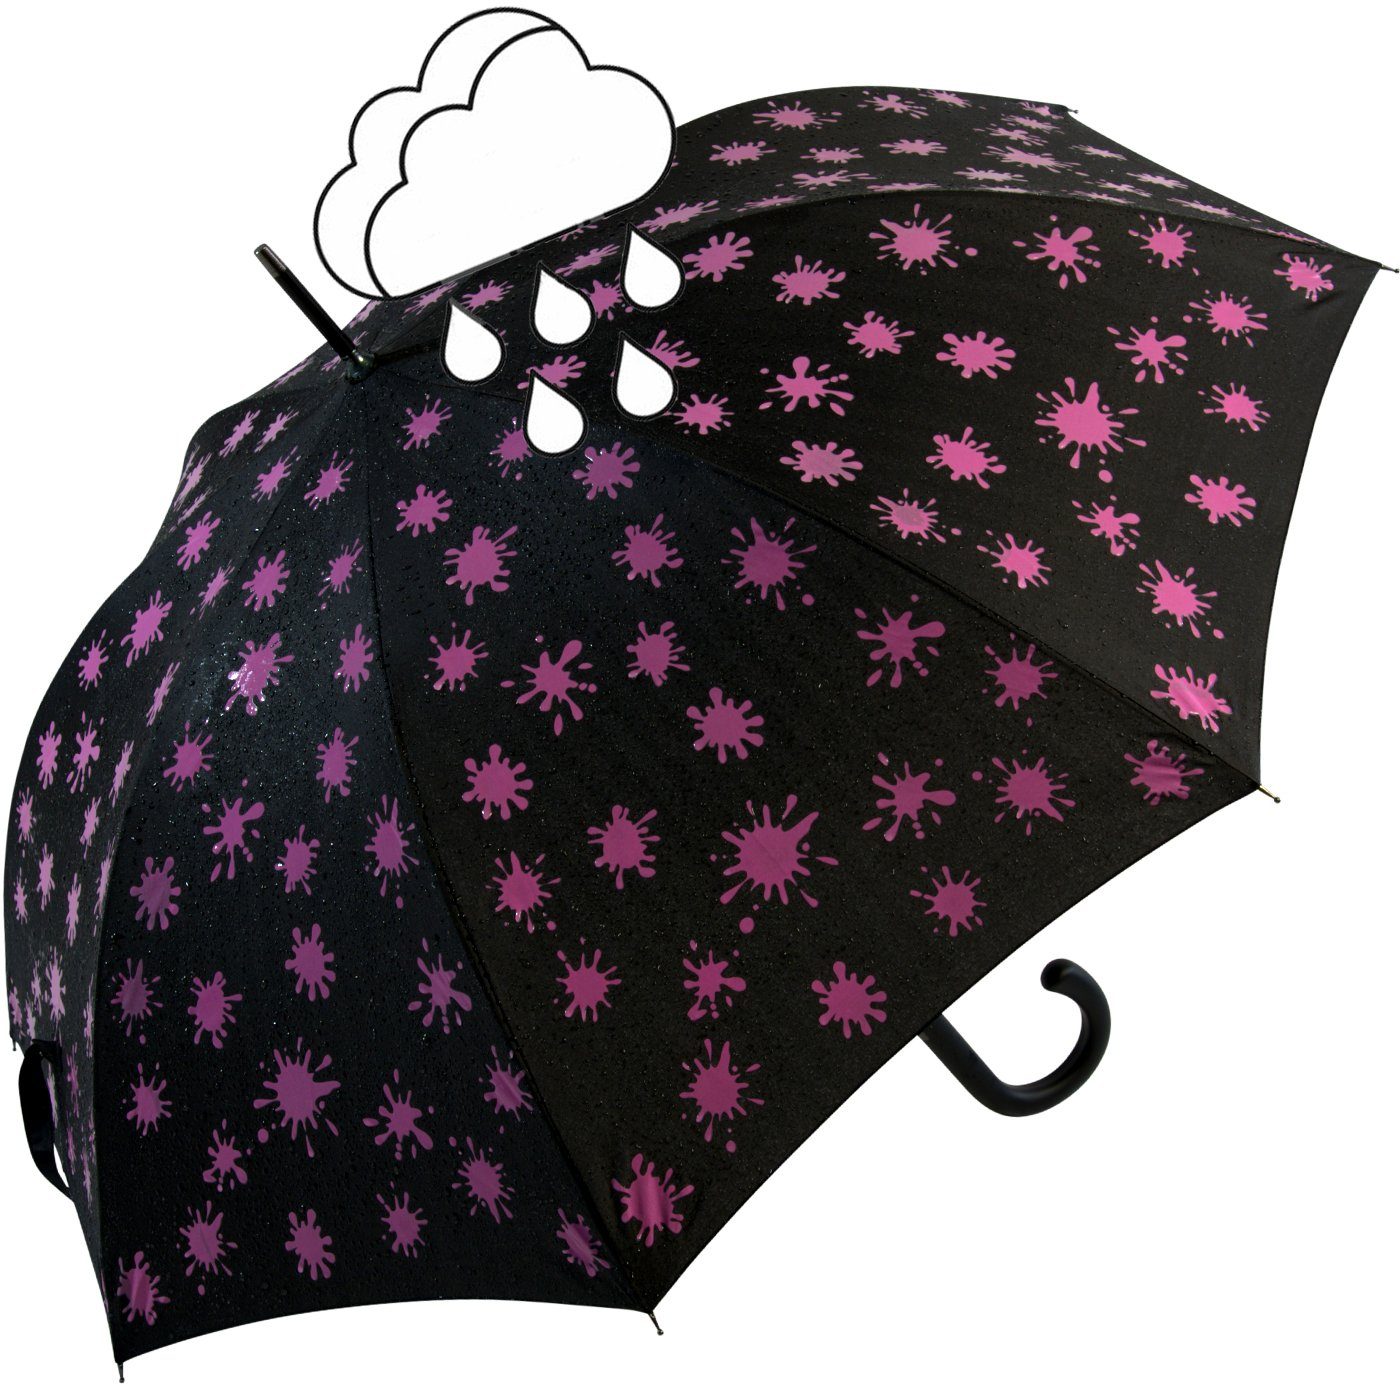 mit iX-brella Nässe Wet bei Damenschirm neon-pink Farbkleckse Automatik schwarz-weiß-neonpink Print, und - Farbänderung iX-brella Langregenschirm